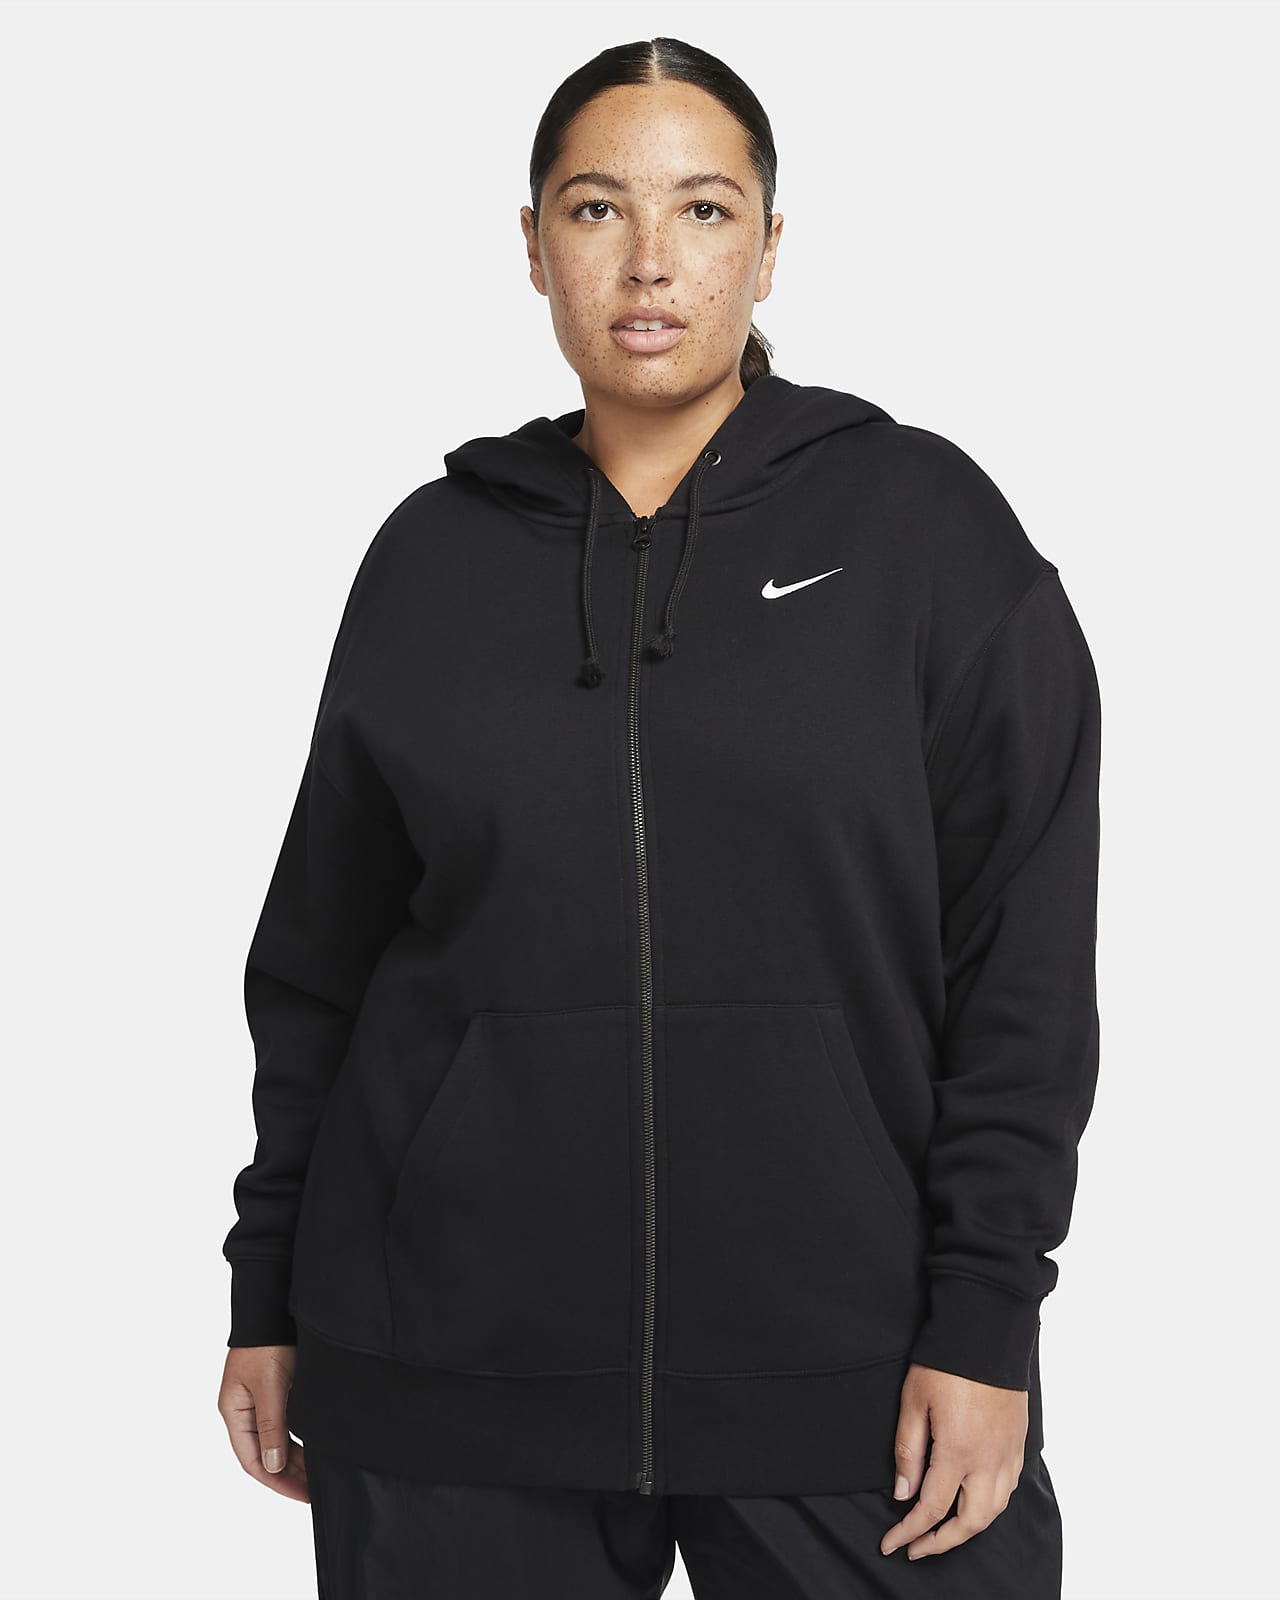 Damska dzianinowa bluza z kapturem i zamkiem na całej długości Nike Sportswear Essentials (duże rozmiary)